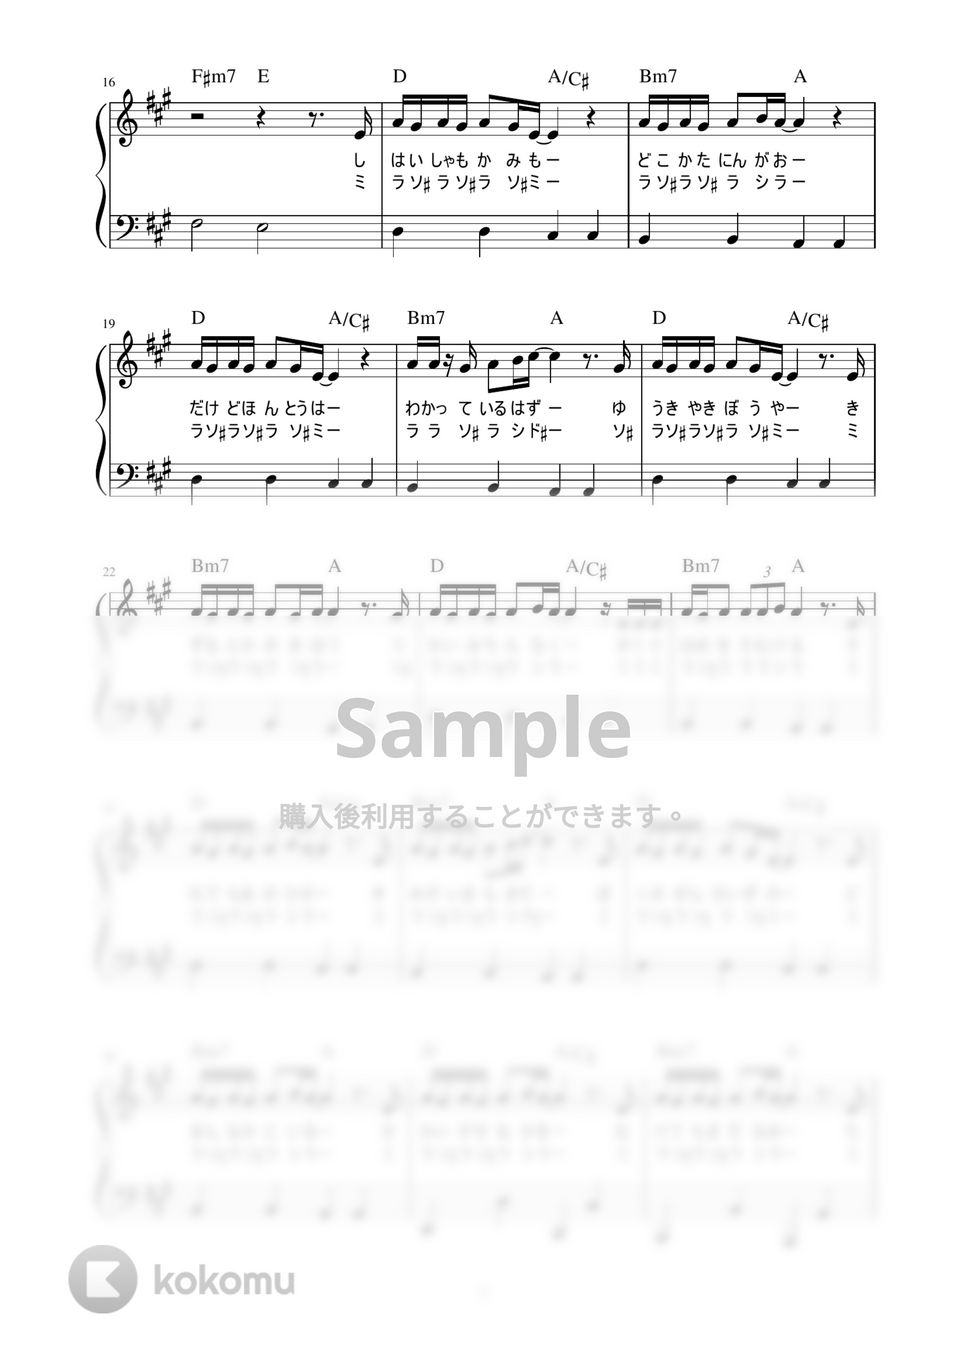 RADWIMPS - 愛にできることはまだあるかい (かんたん / 歌詞付き / ドレミ付き / 初心者) by piano.tokyo